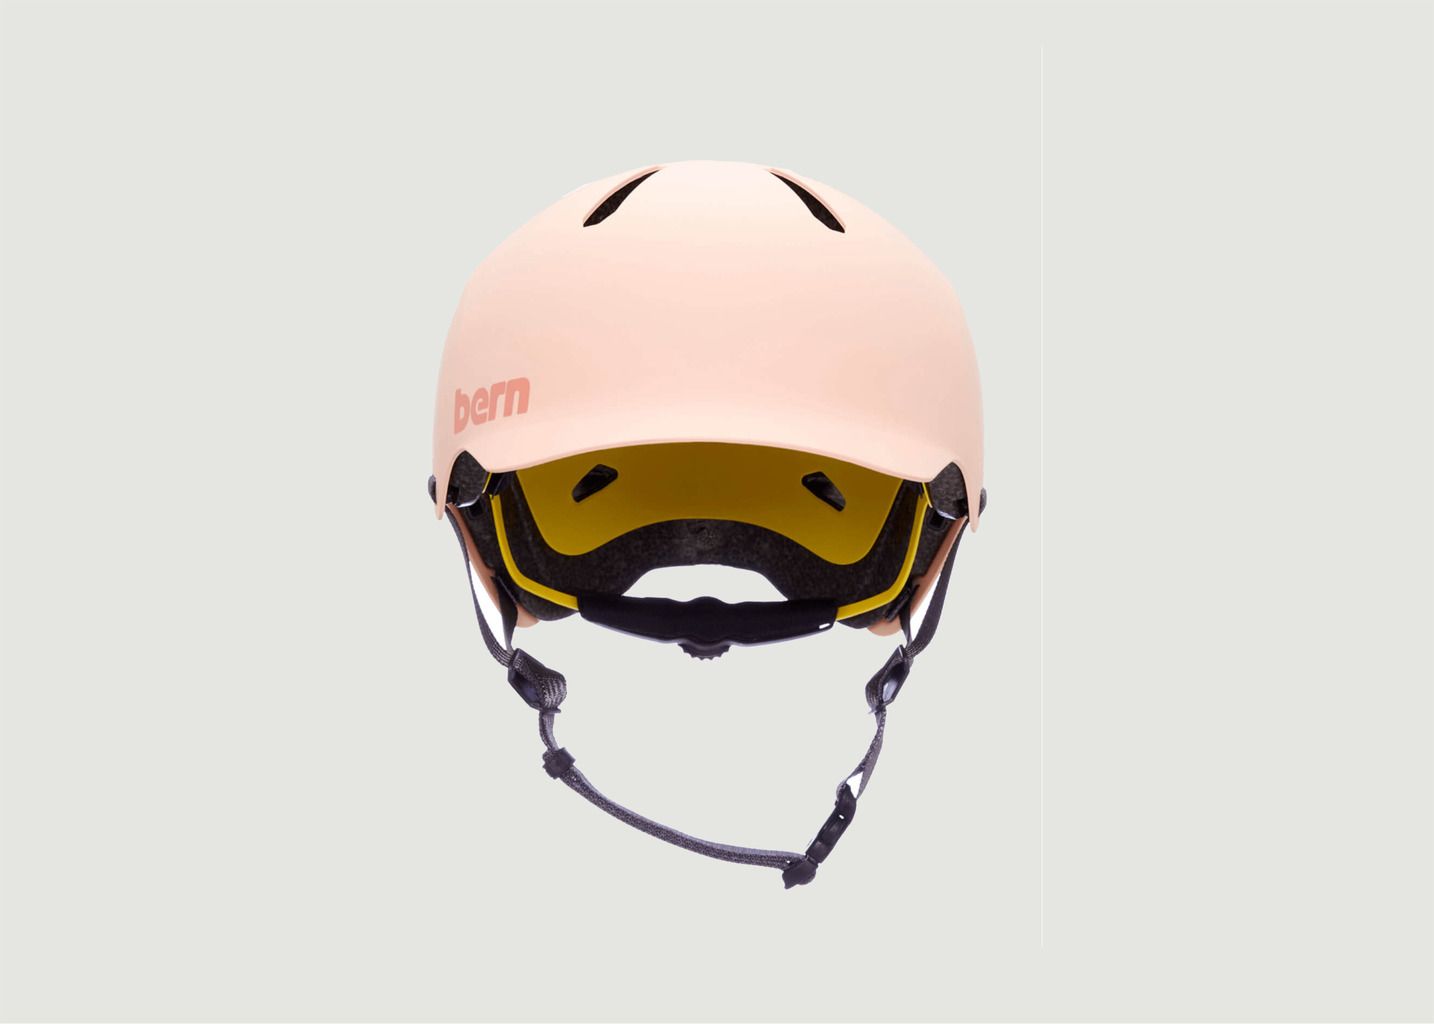 Watts 2.0 Bicycle Helmet - Bern